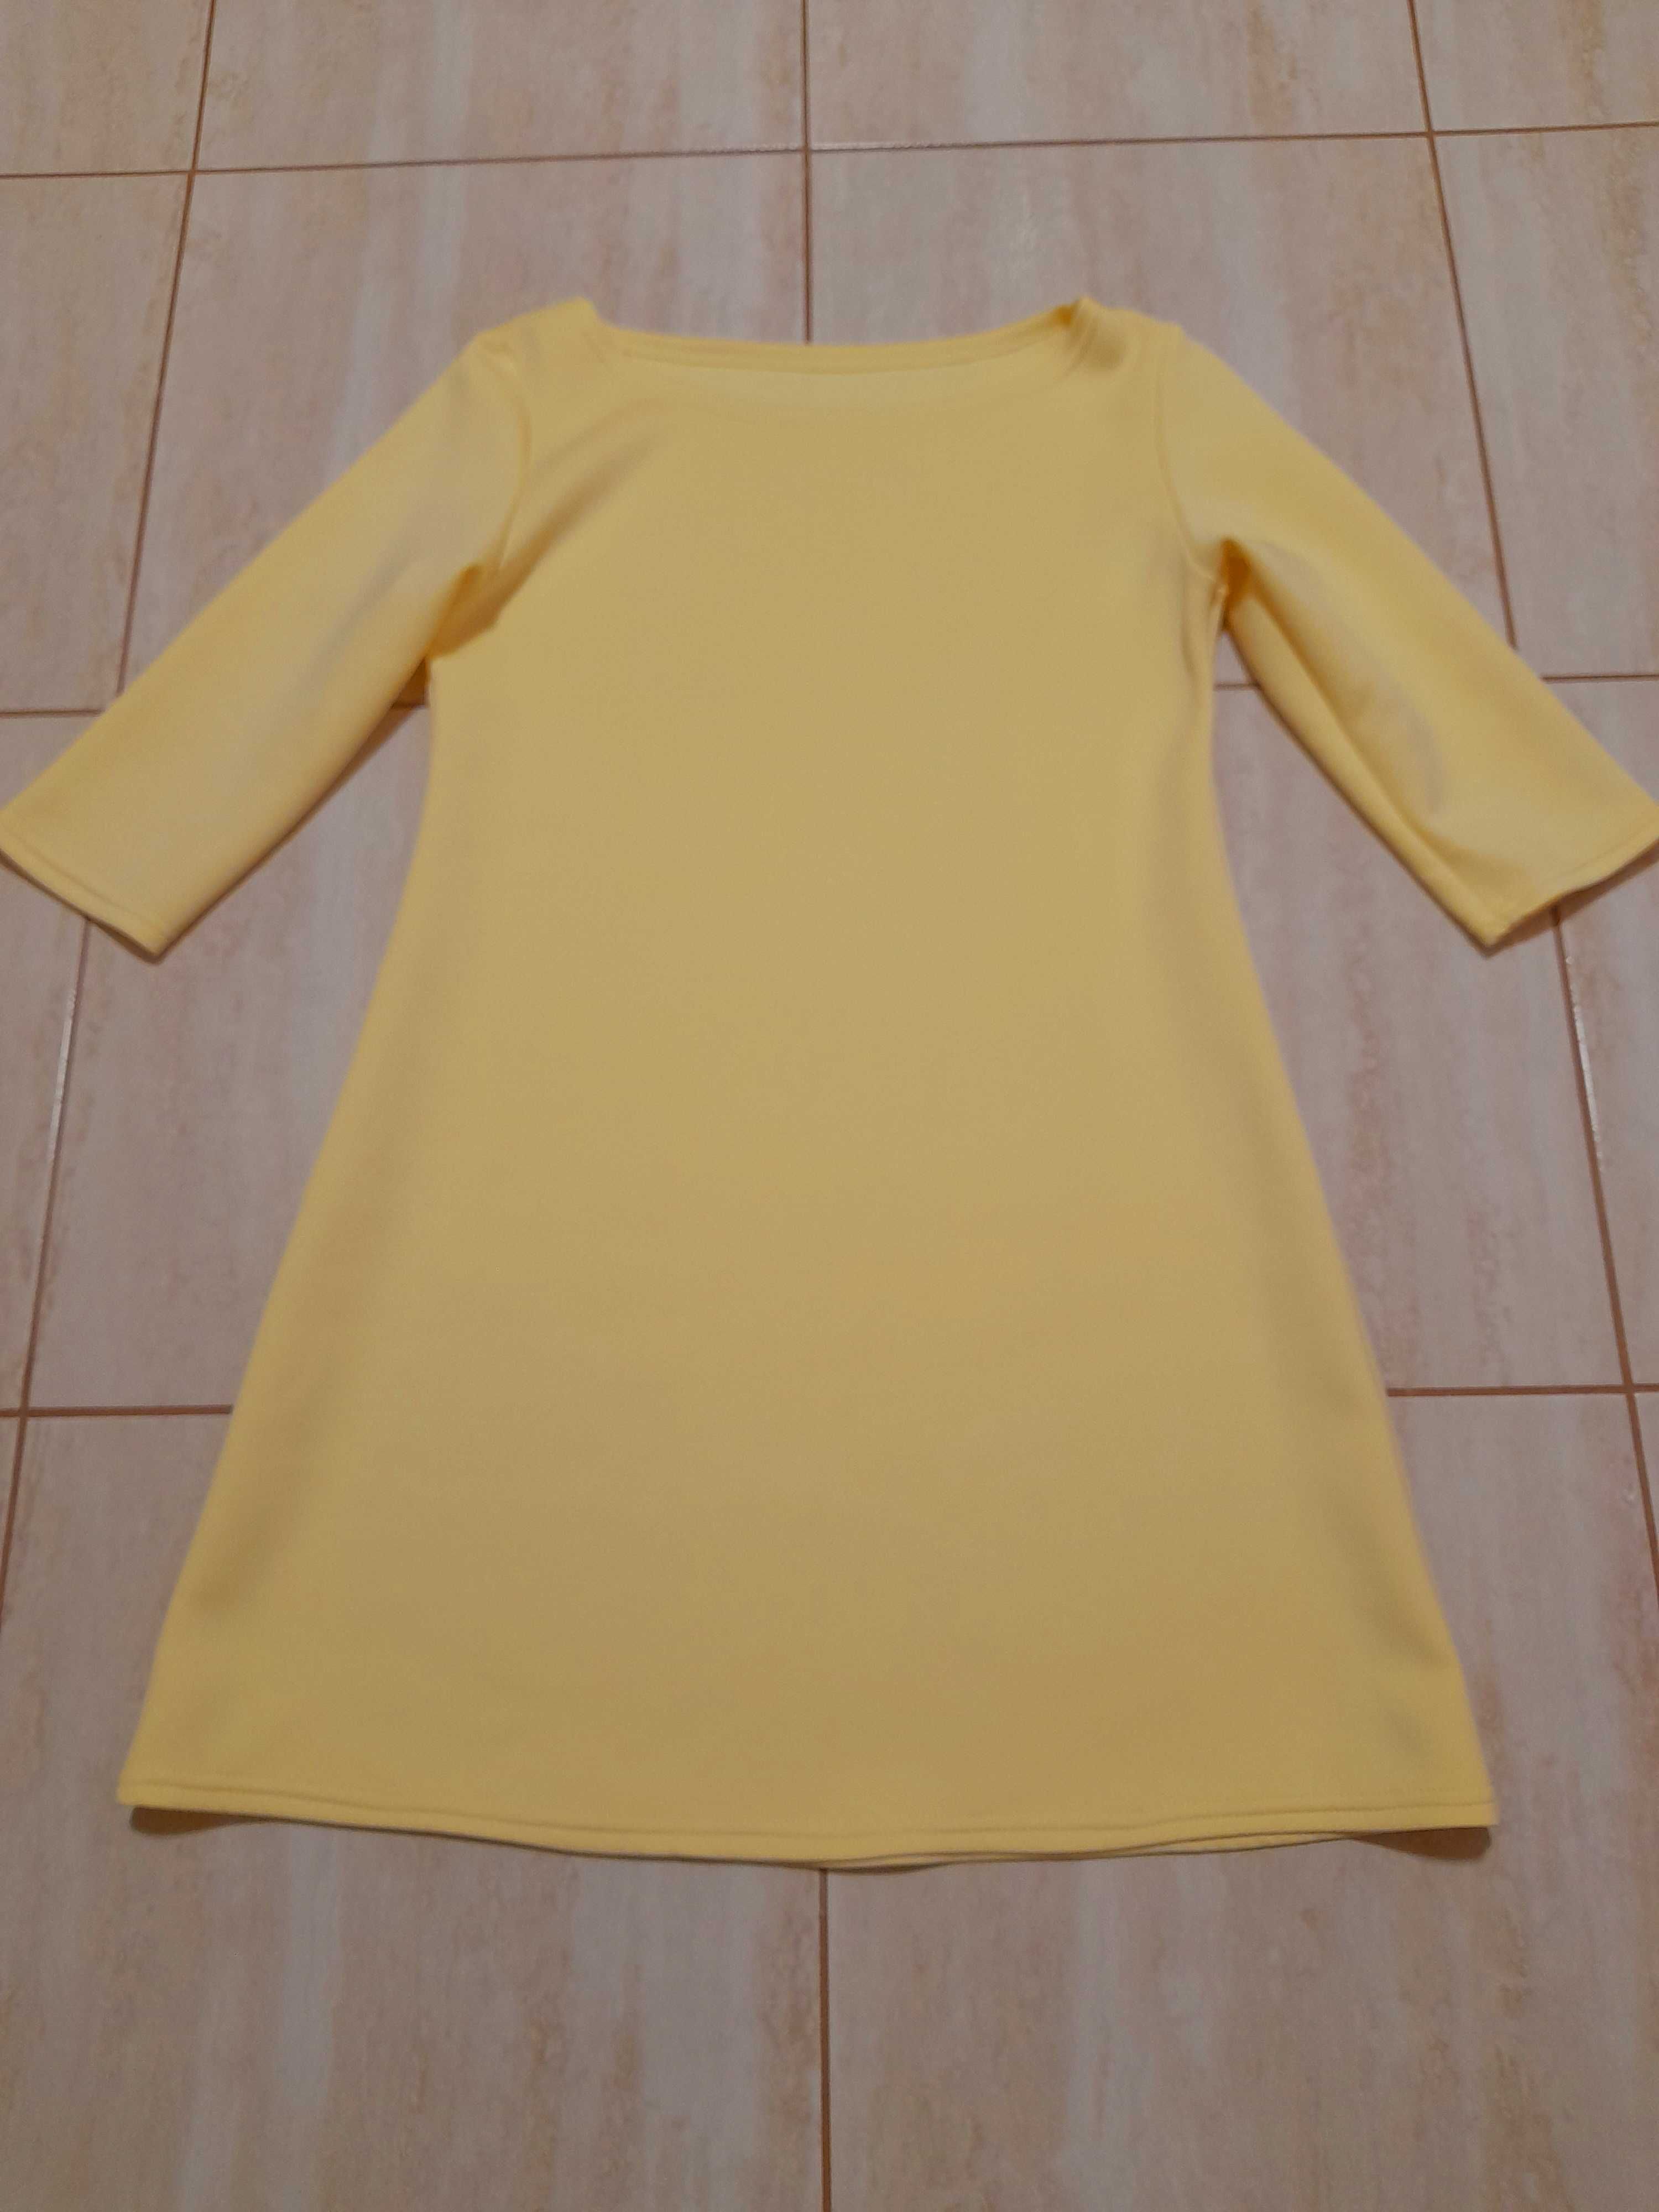 Żółta klasyczna prosta sukienka w literę A, xs, s